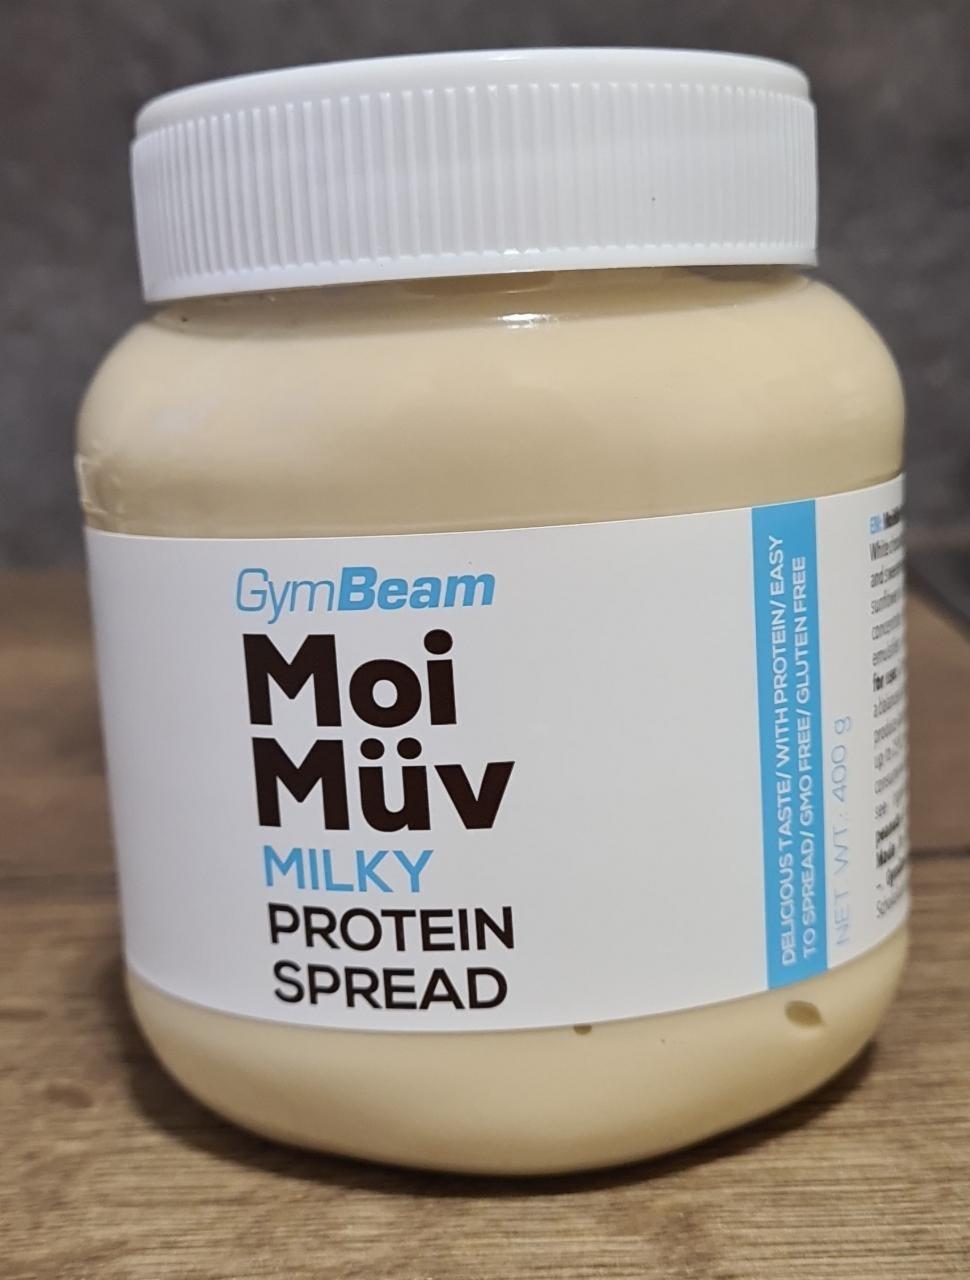 Képek - Milky protein spread Moi Müv GymBeam